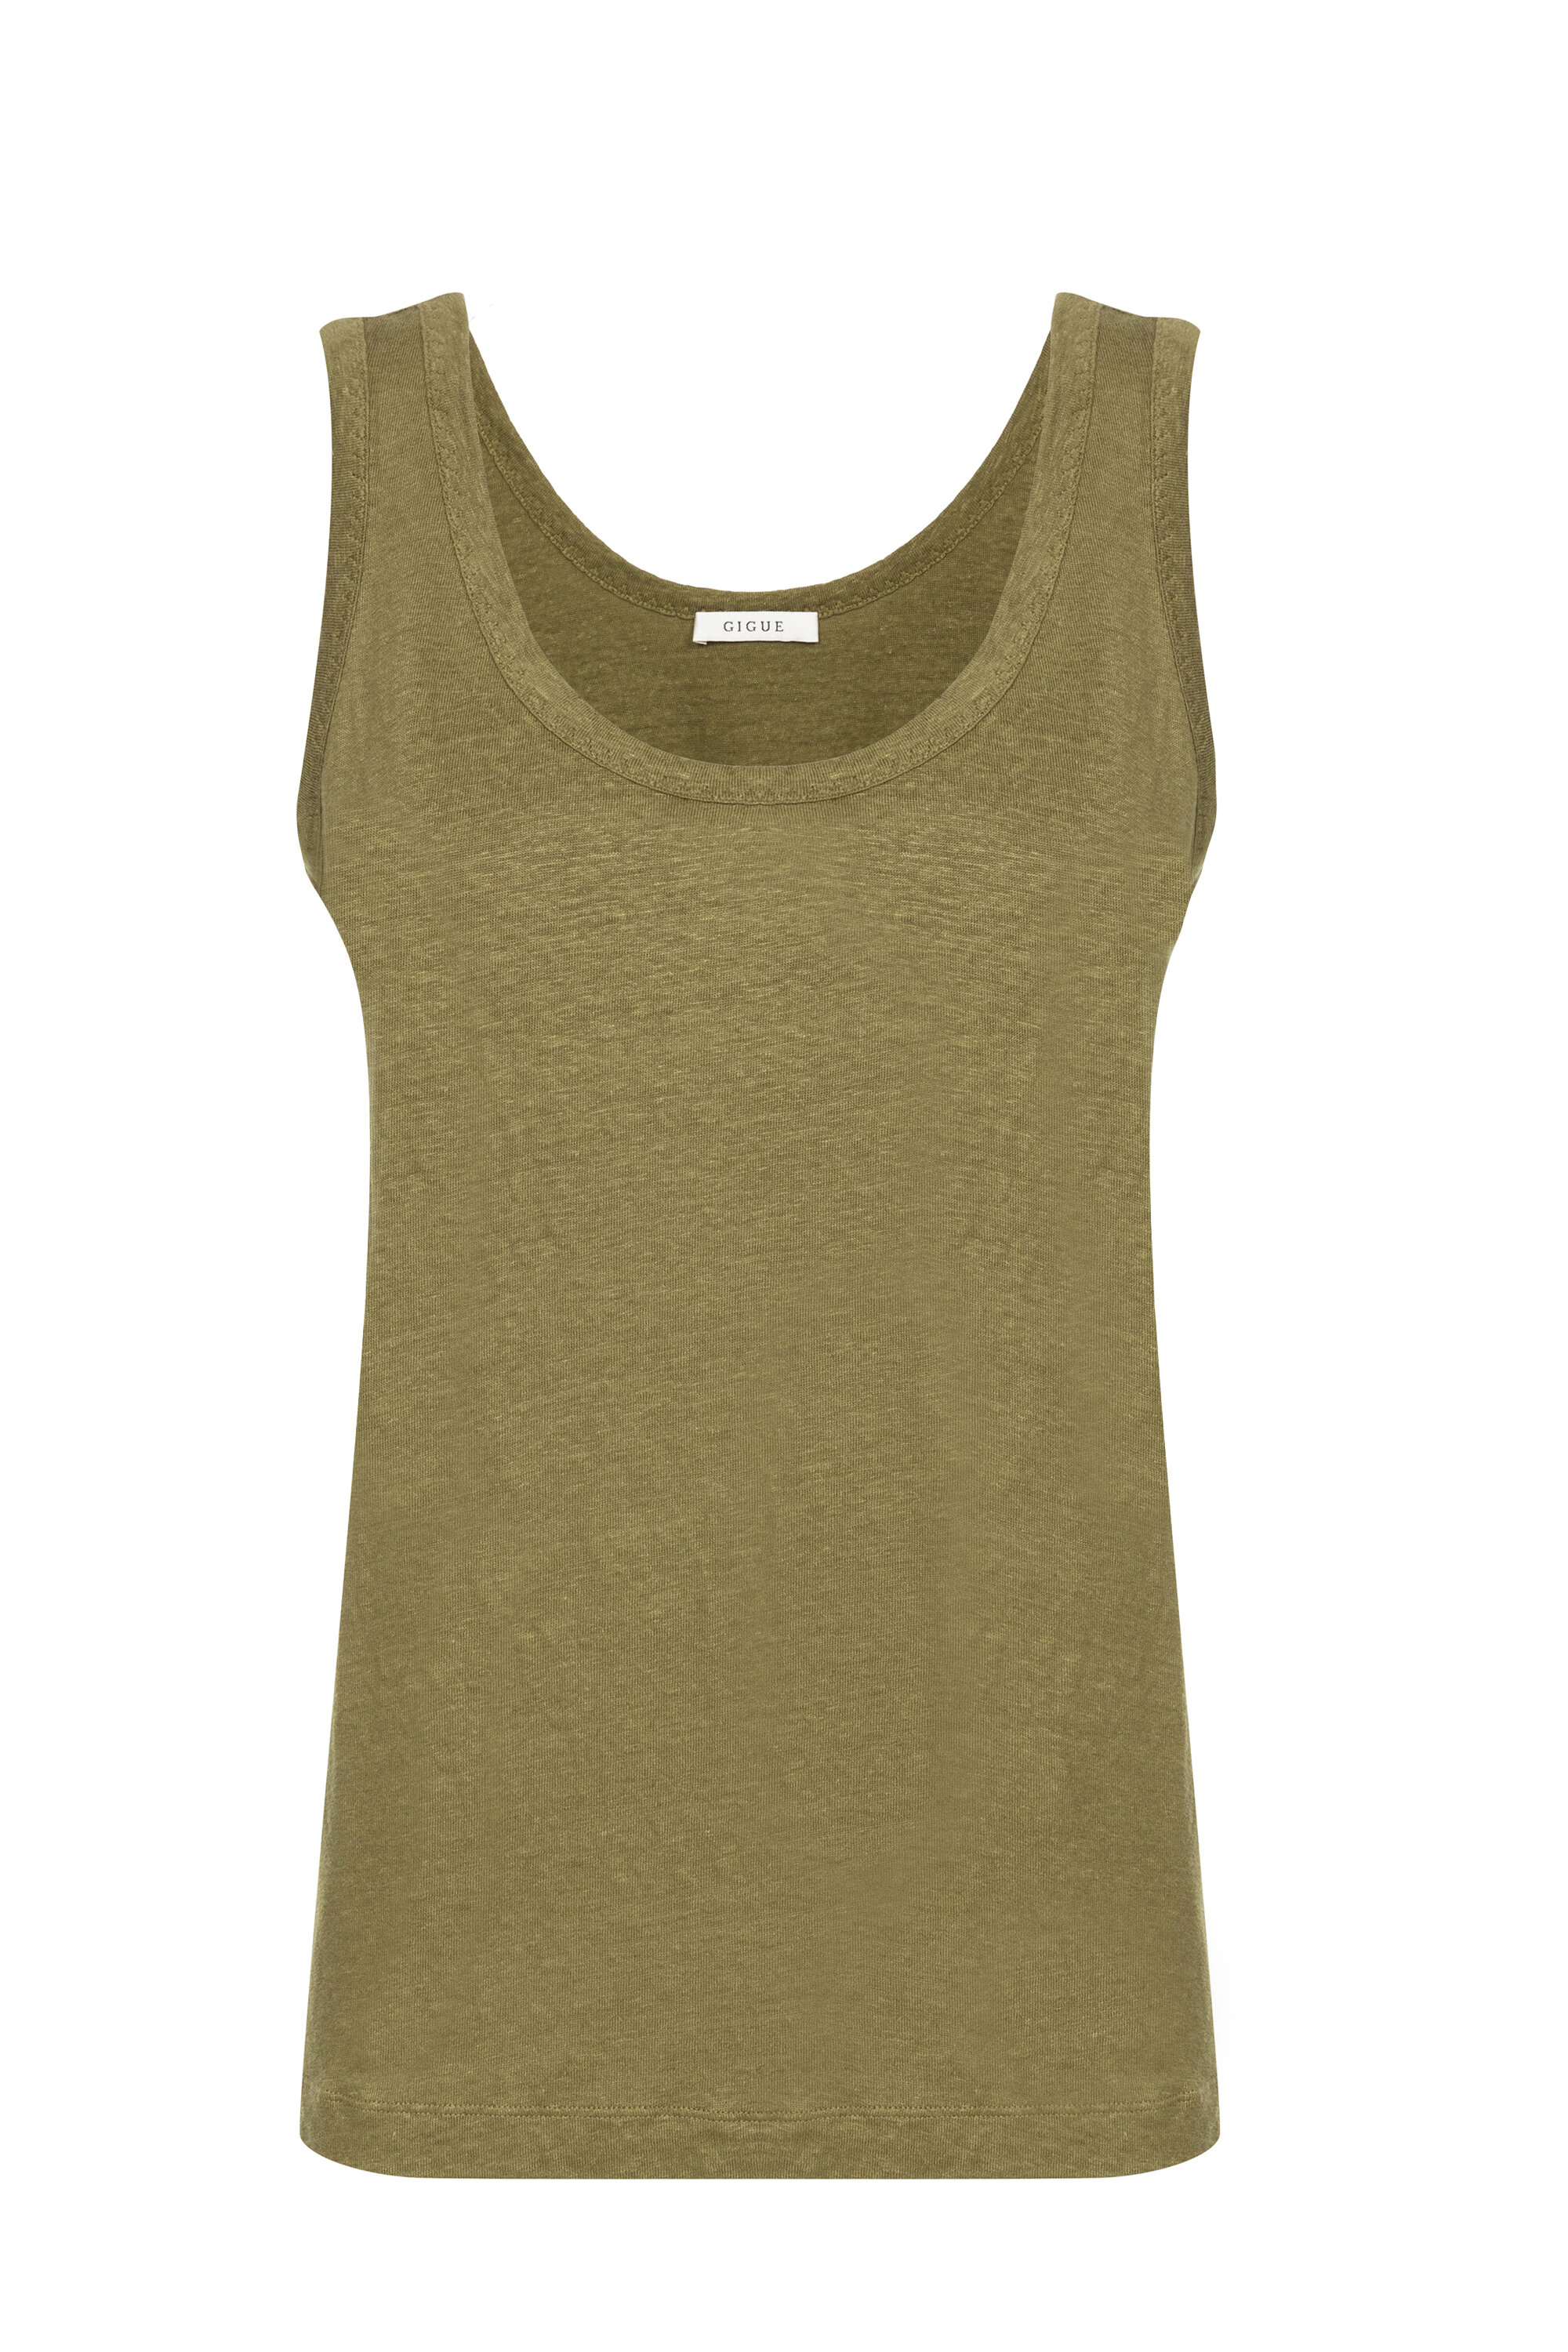 Quagga Evolueren Onze onderneming Kaki mouwloos topje met een diep decolleté - T-shirts & tops - Collectie -  Gigue